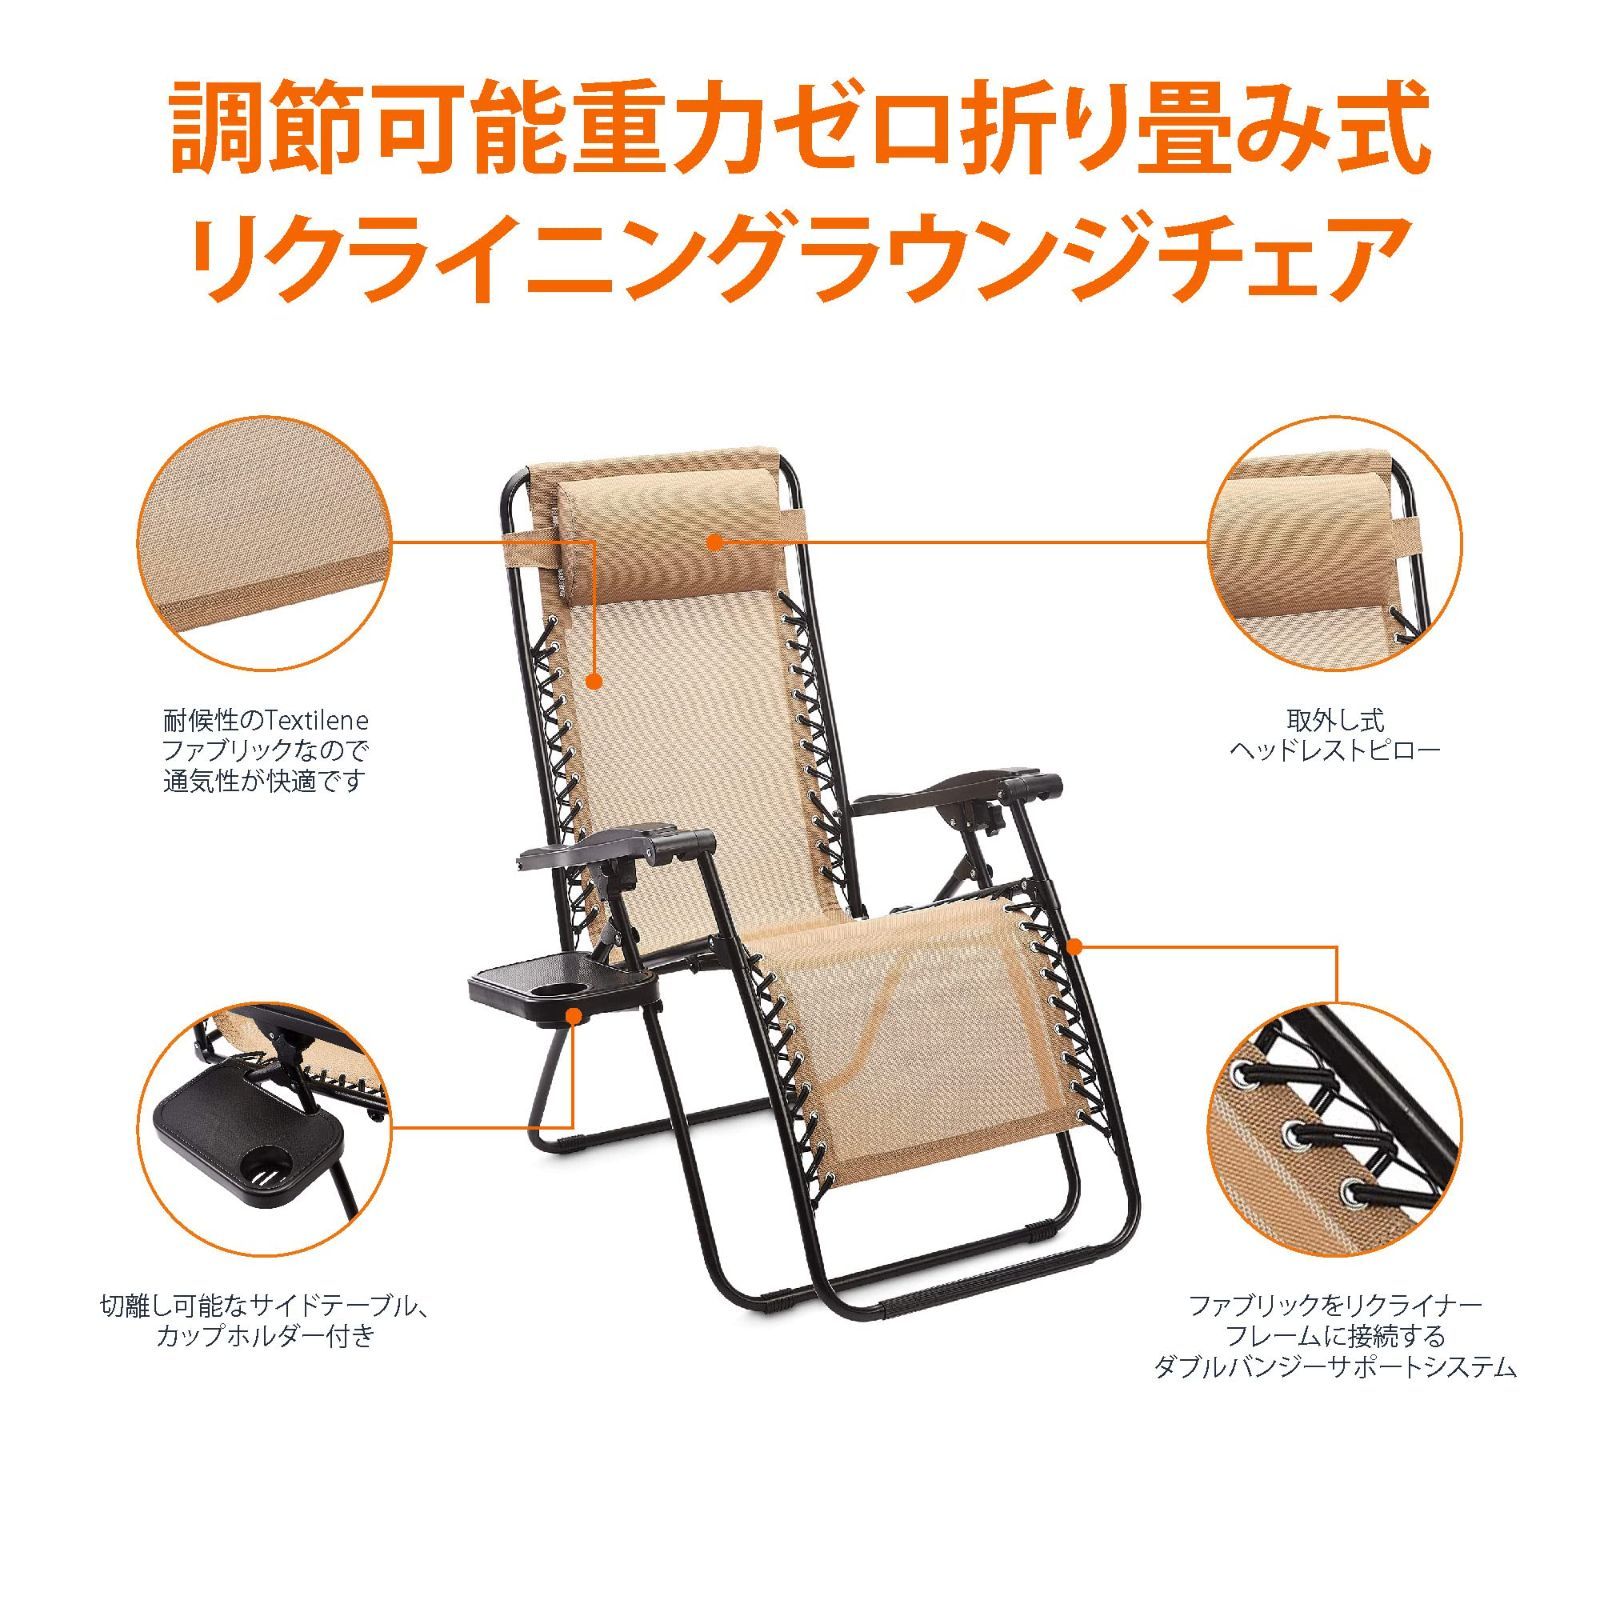 新着商品】サイドテーブル付き 折りたたみ 椅子 ゼログラビティー 